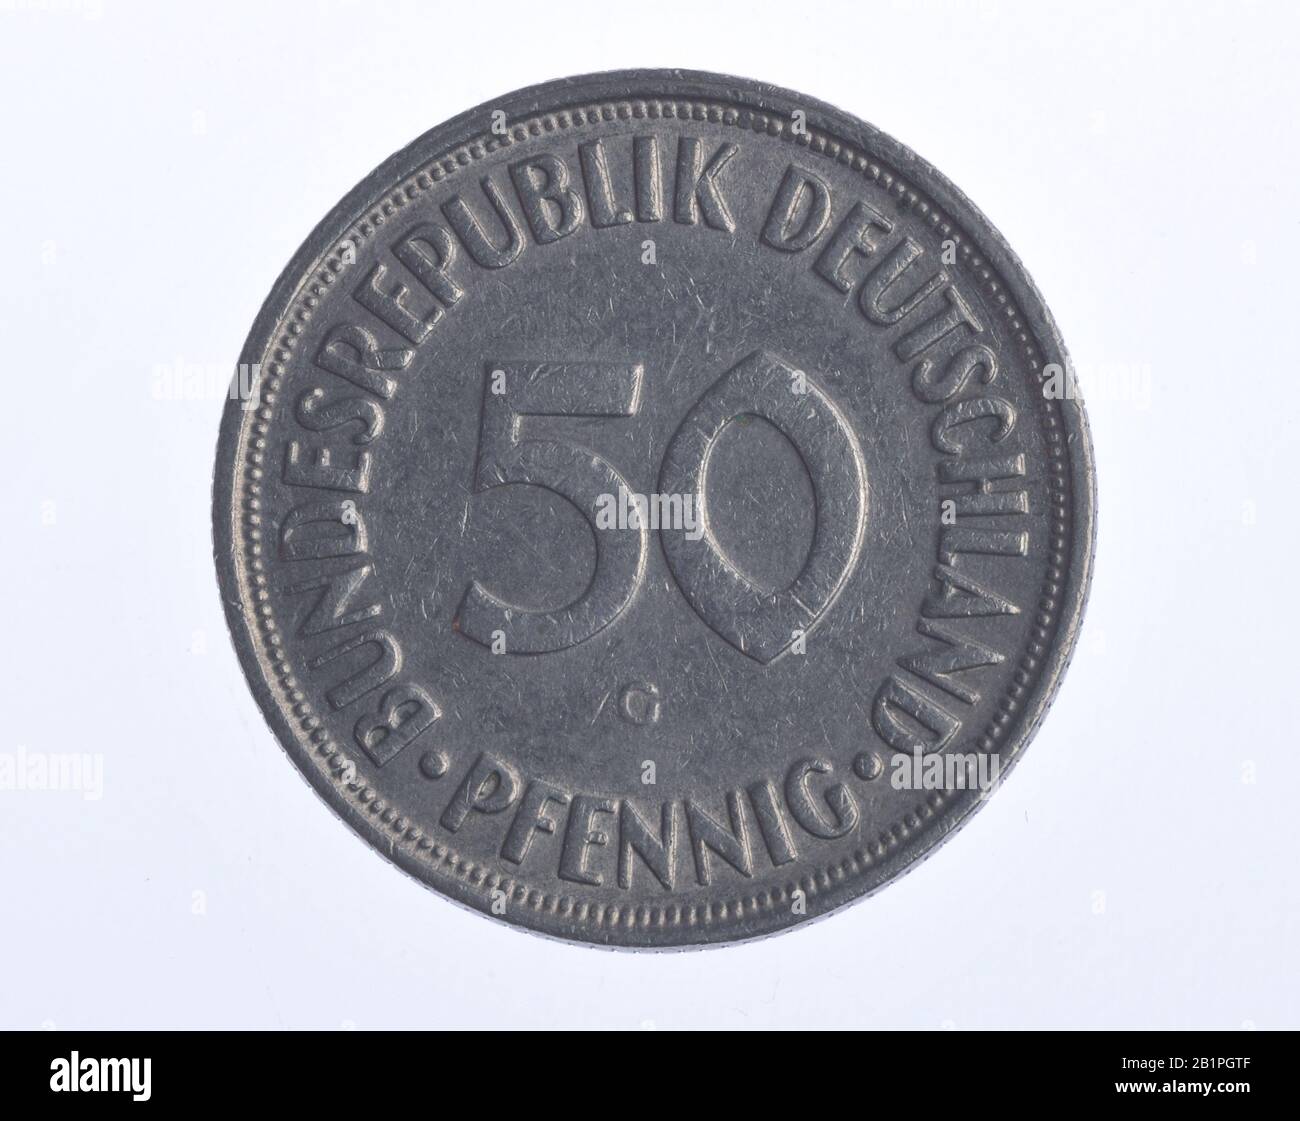 Geldmünze, 50 Pfennig, Bundesrepublik Deutschland Foto de stock